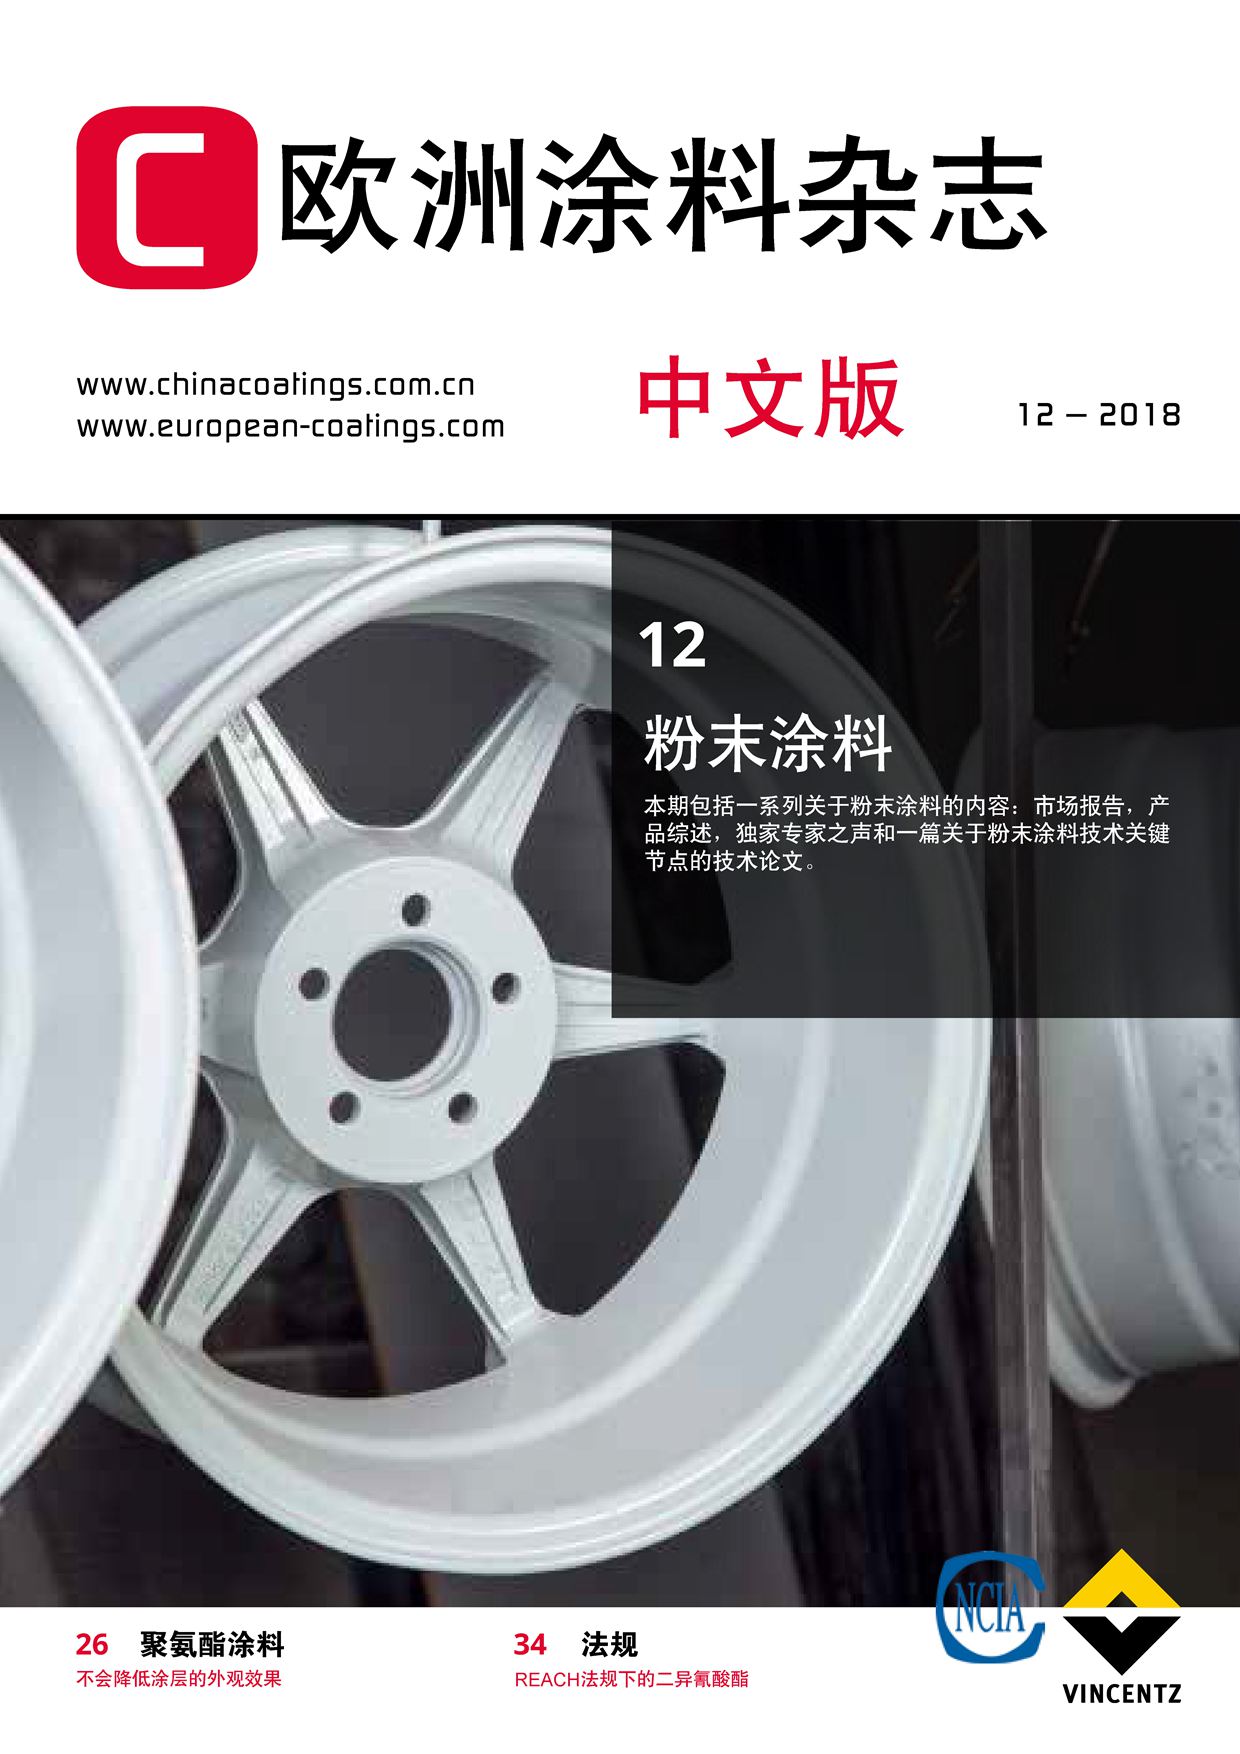 《欧洲涂料杂志中文版》2018第12期